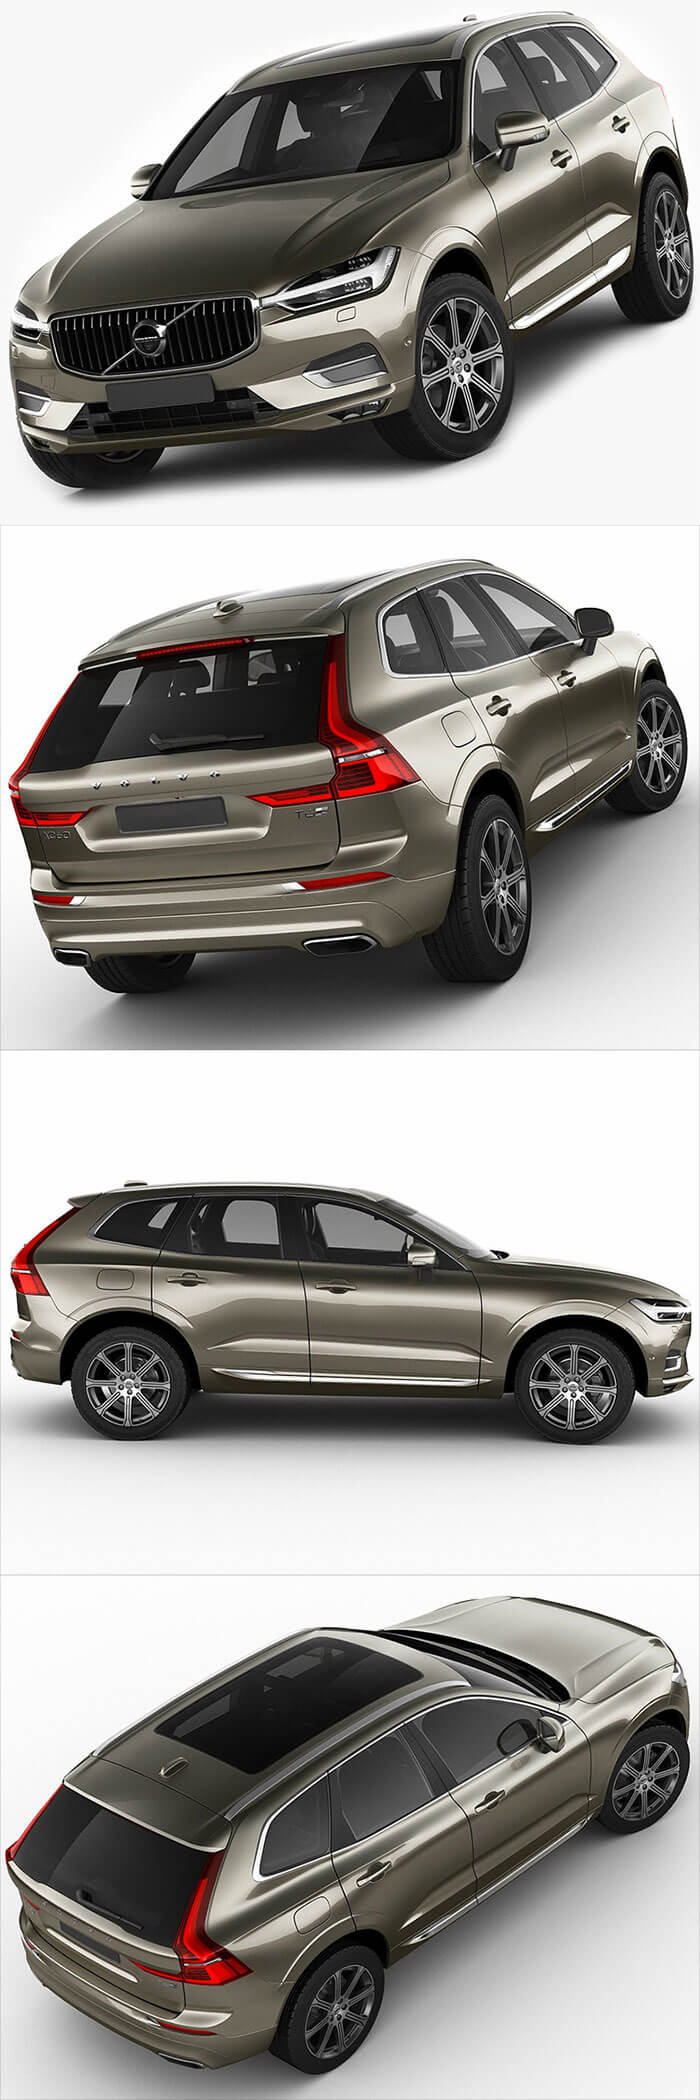 沃尔沃 Volvo XC60 2018 款越野车汽车3D模型下载（C4D,FBX,OBJ,MAX）